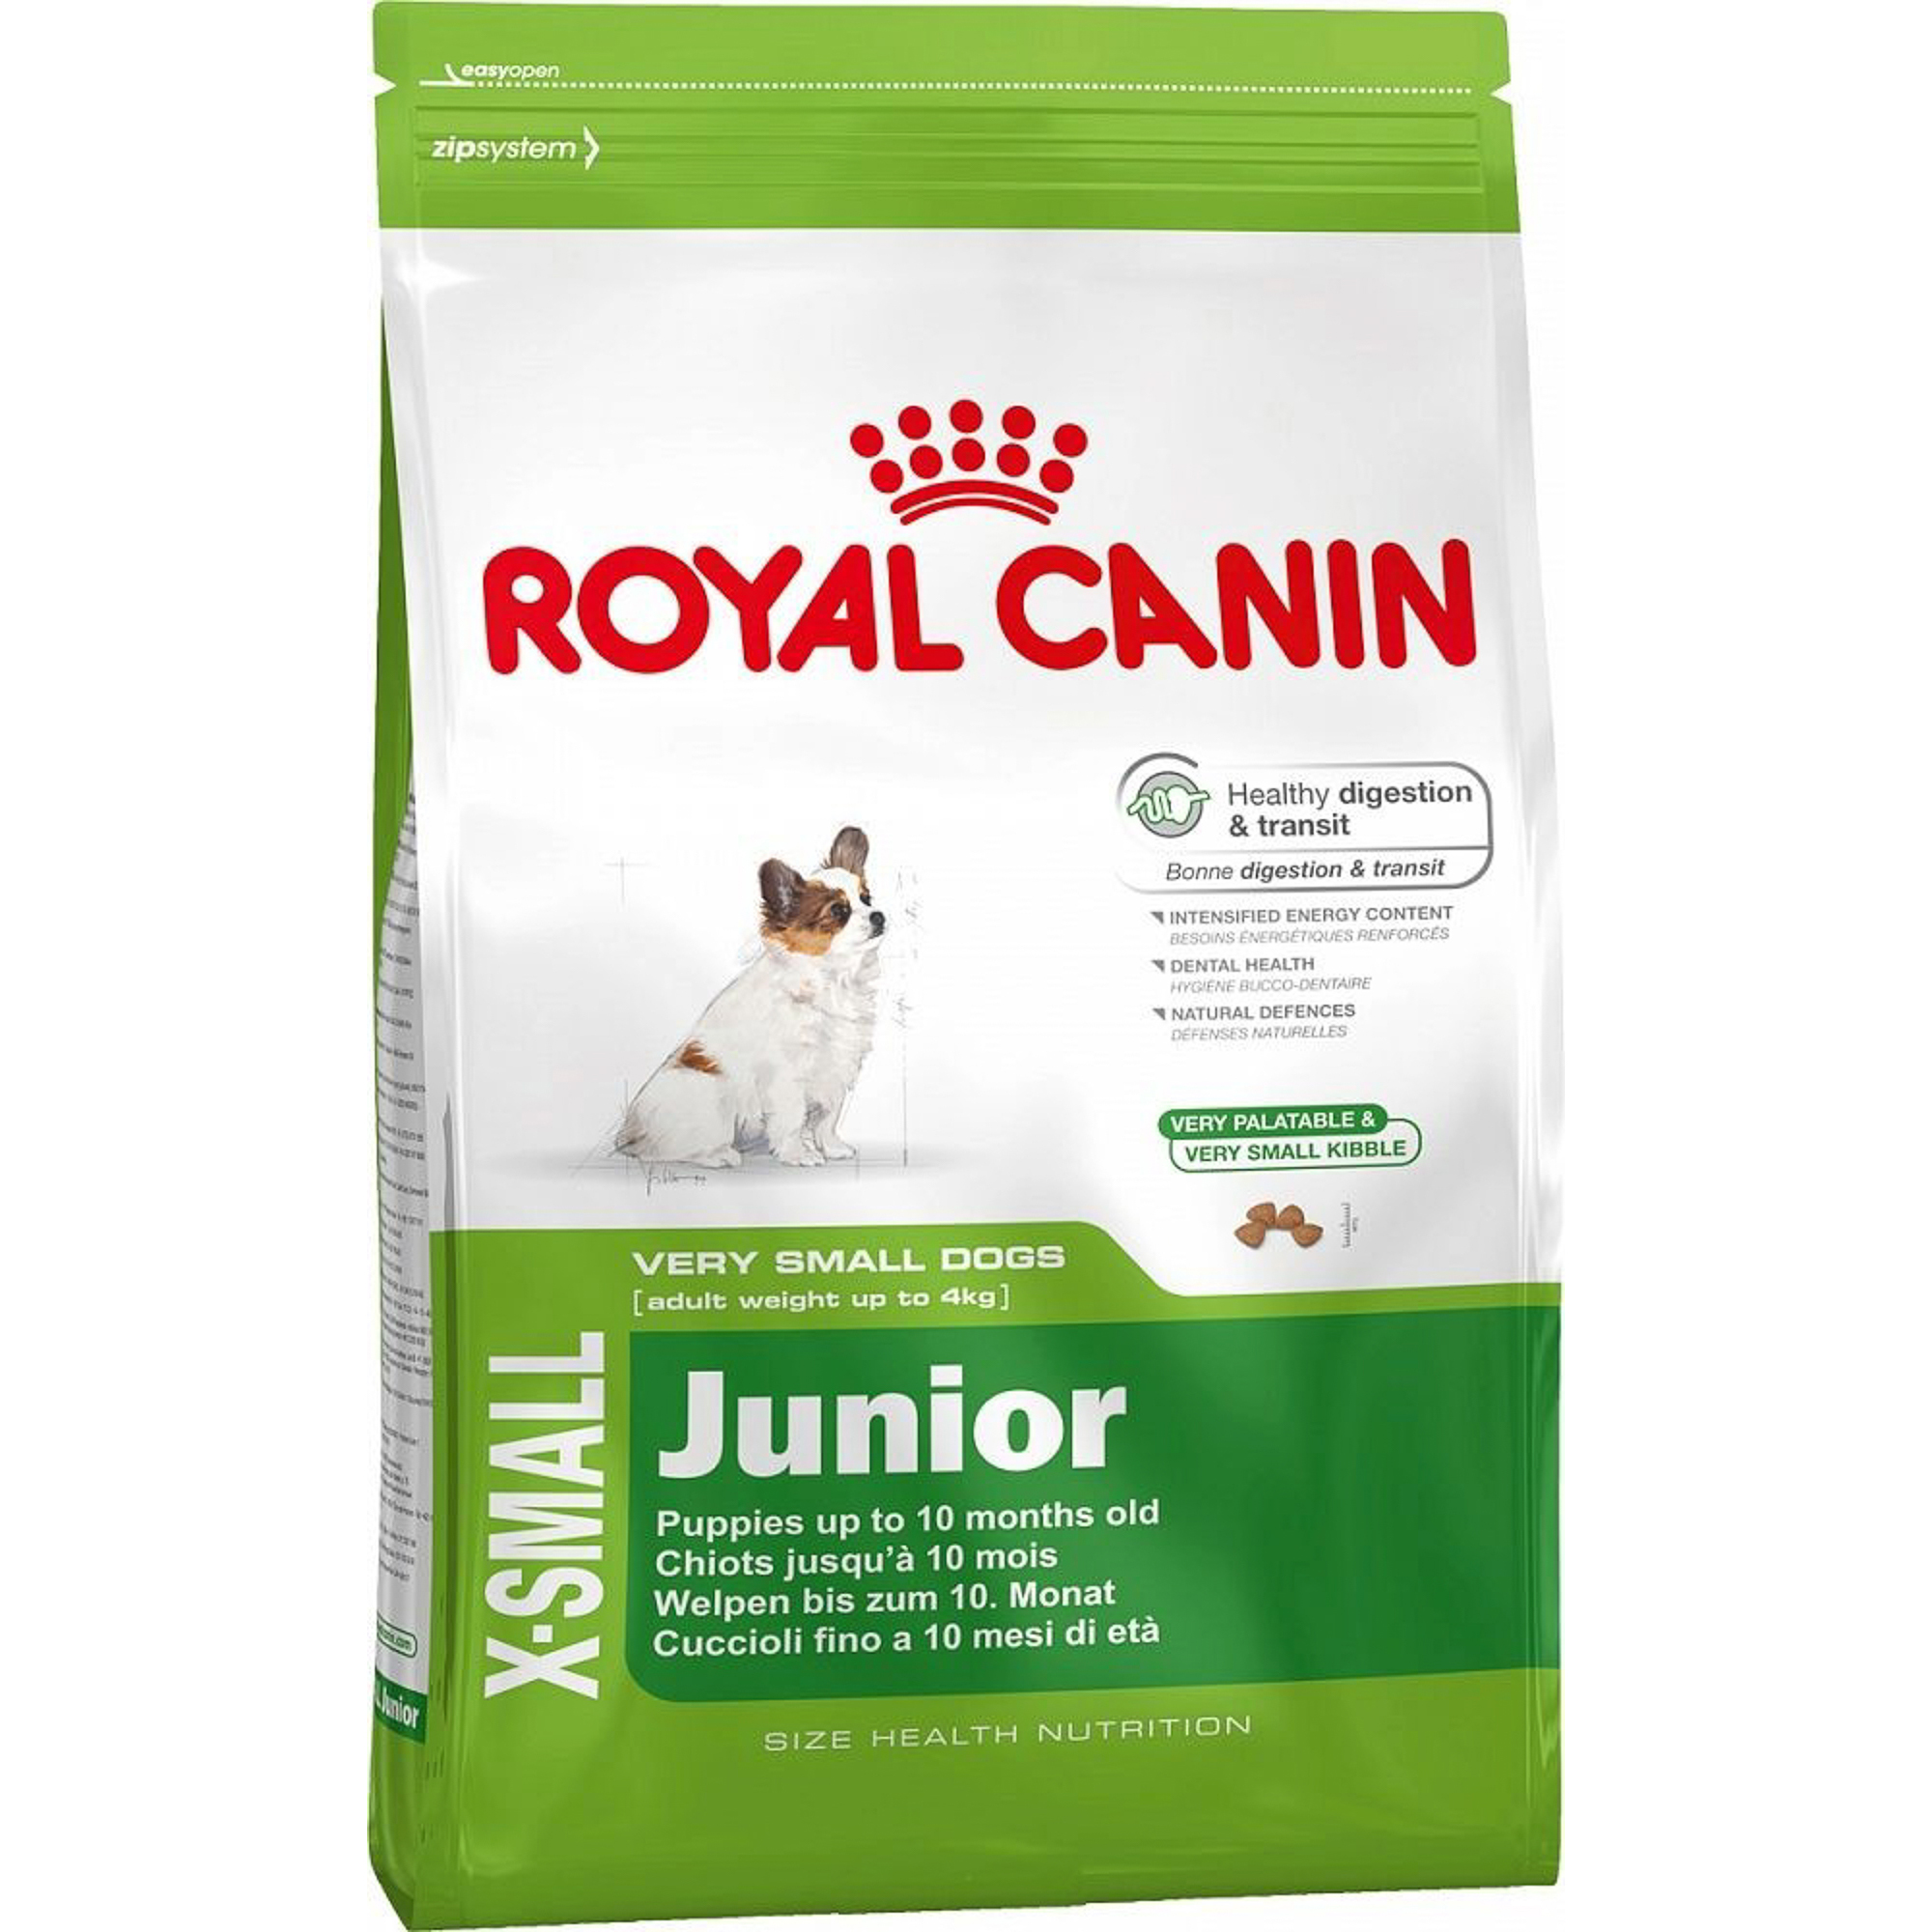 Корм для щенков Royal Canin JUNIOR для миниатюрных собак, до 10 месяцев, 1,5 кг корм для щенков royal canin x small puppy для миниатюрных пород до 10 месяцев птица 500 г